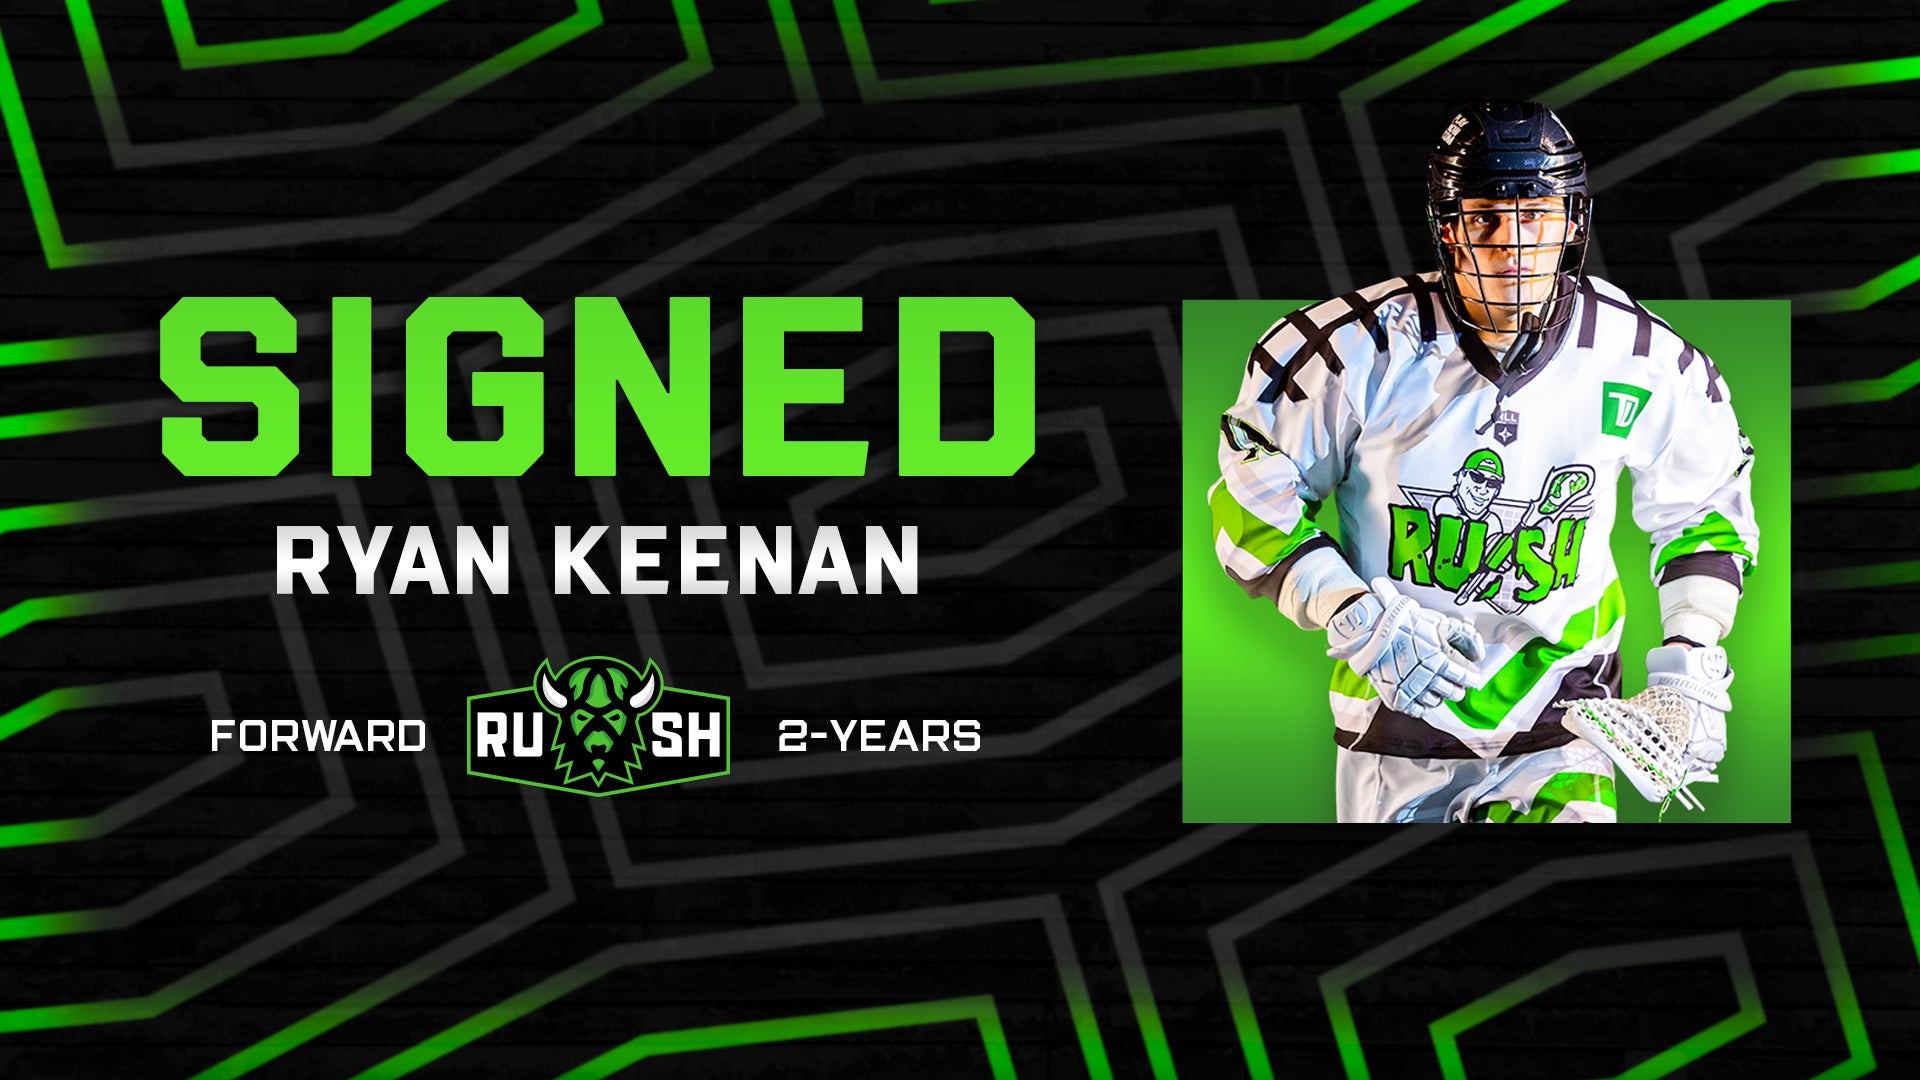 Keenan signed through 2024/25 season